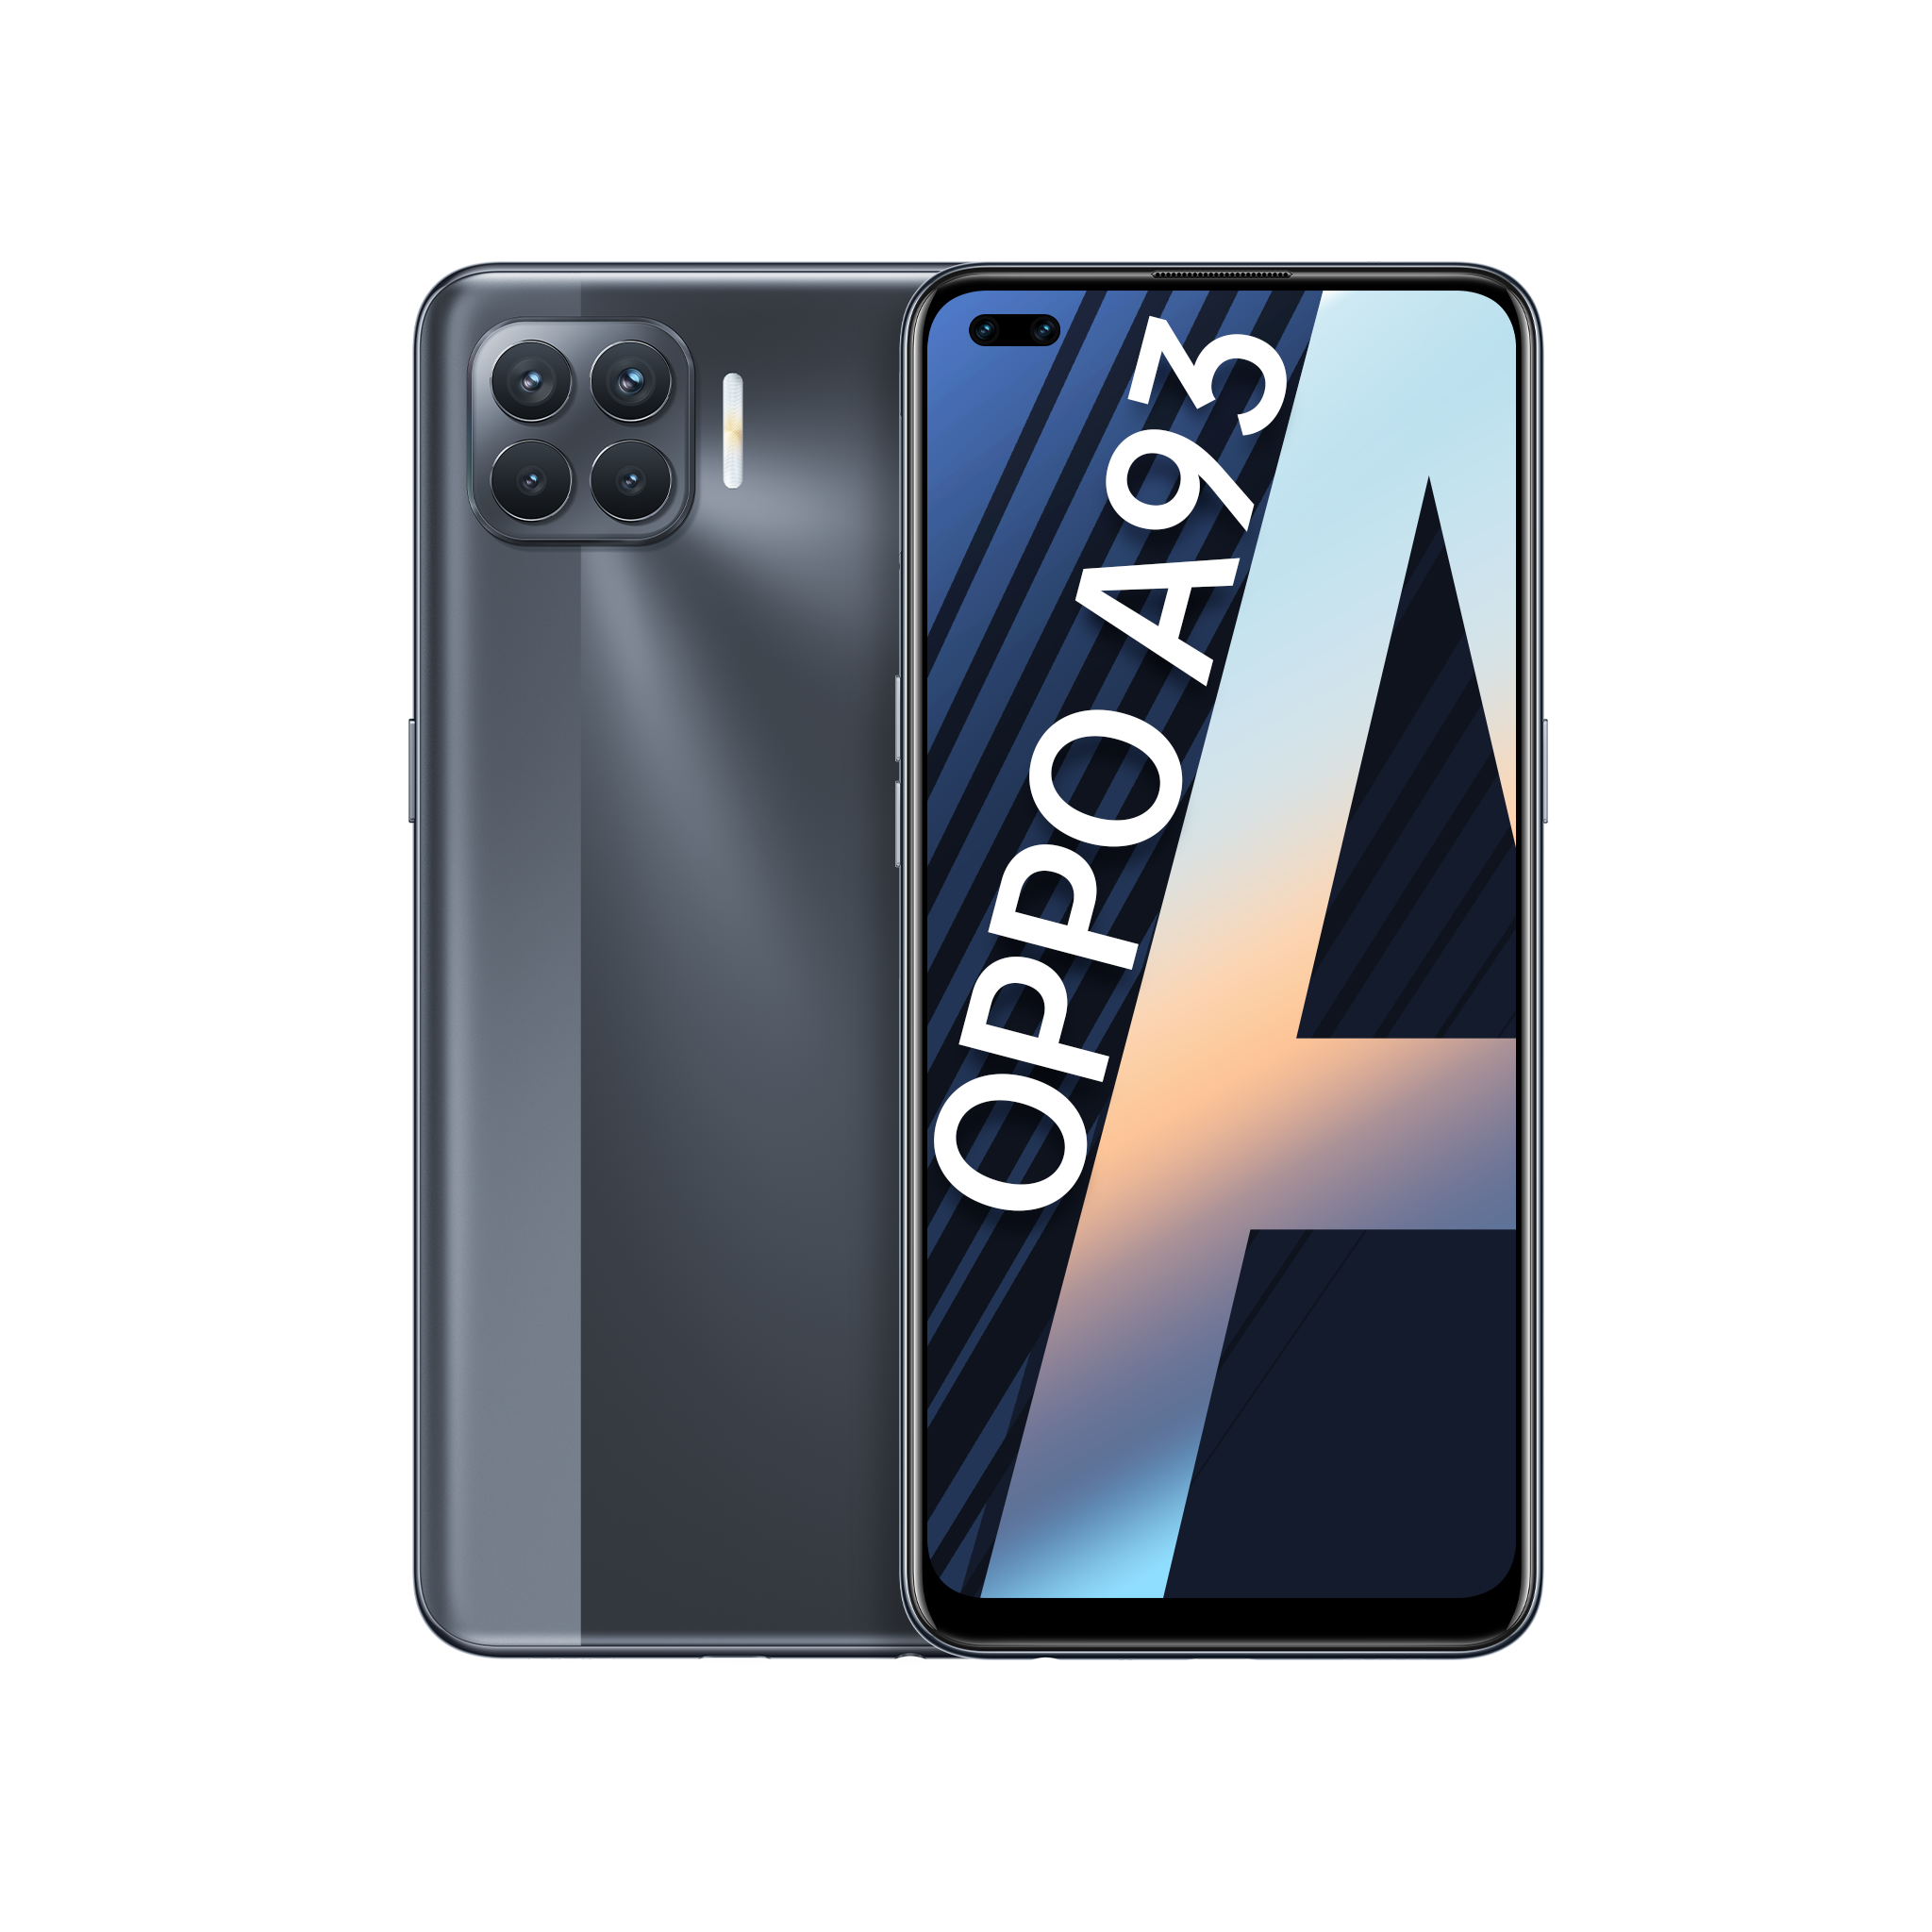 Điện thoại OPPO A93 (8GB/128GB) - Hàng chính hãng